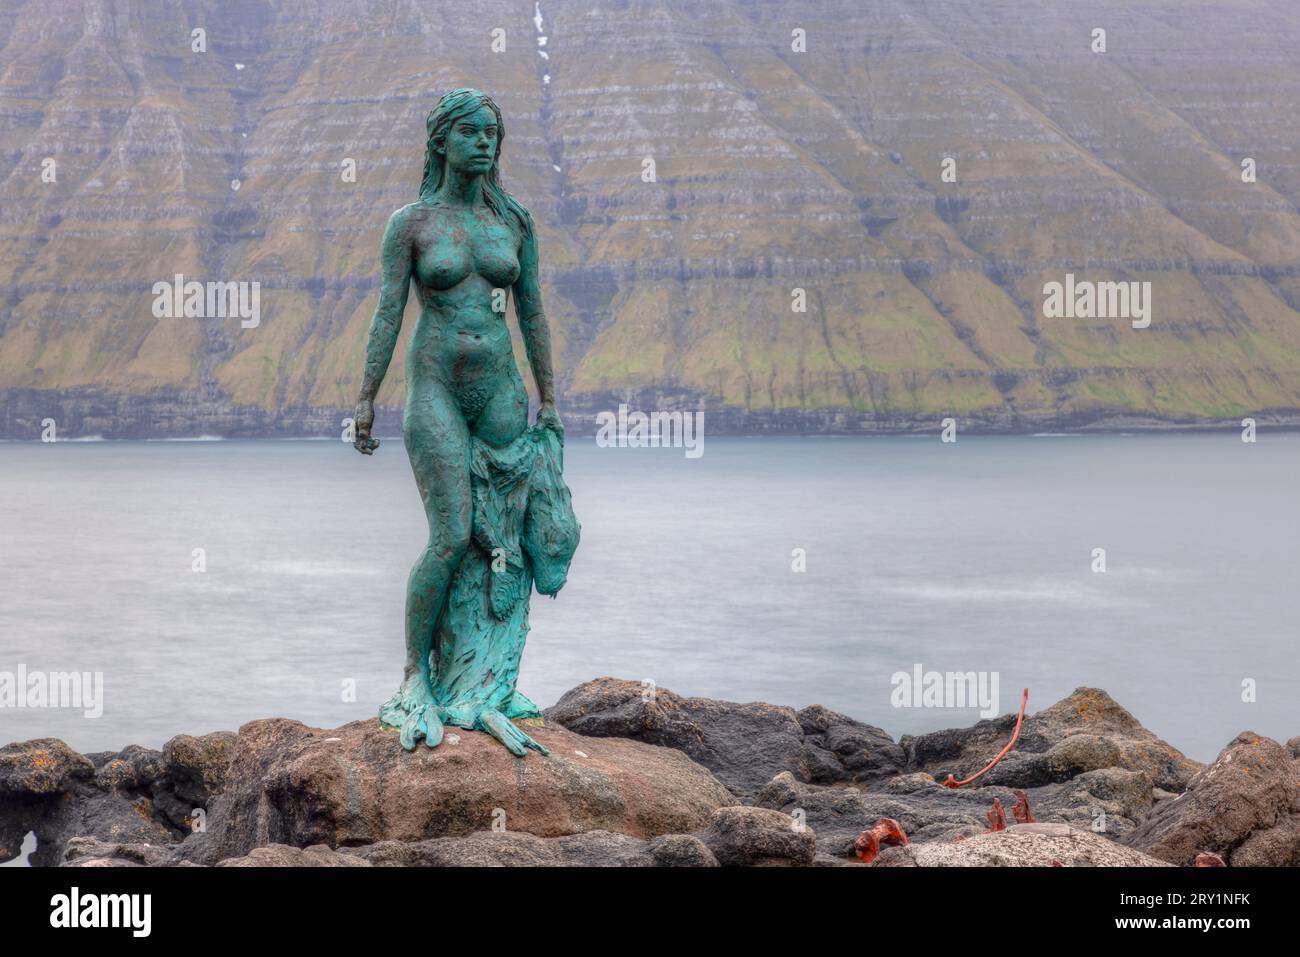 Il villaggio di Mikladalur sull'isola di Kalsoy con la sua statua della donna delle foche, le Isole Faroe. Foto Stock